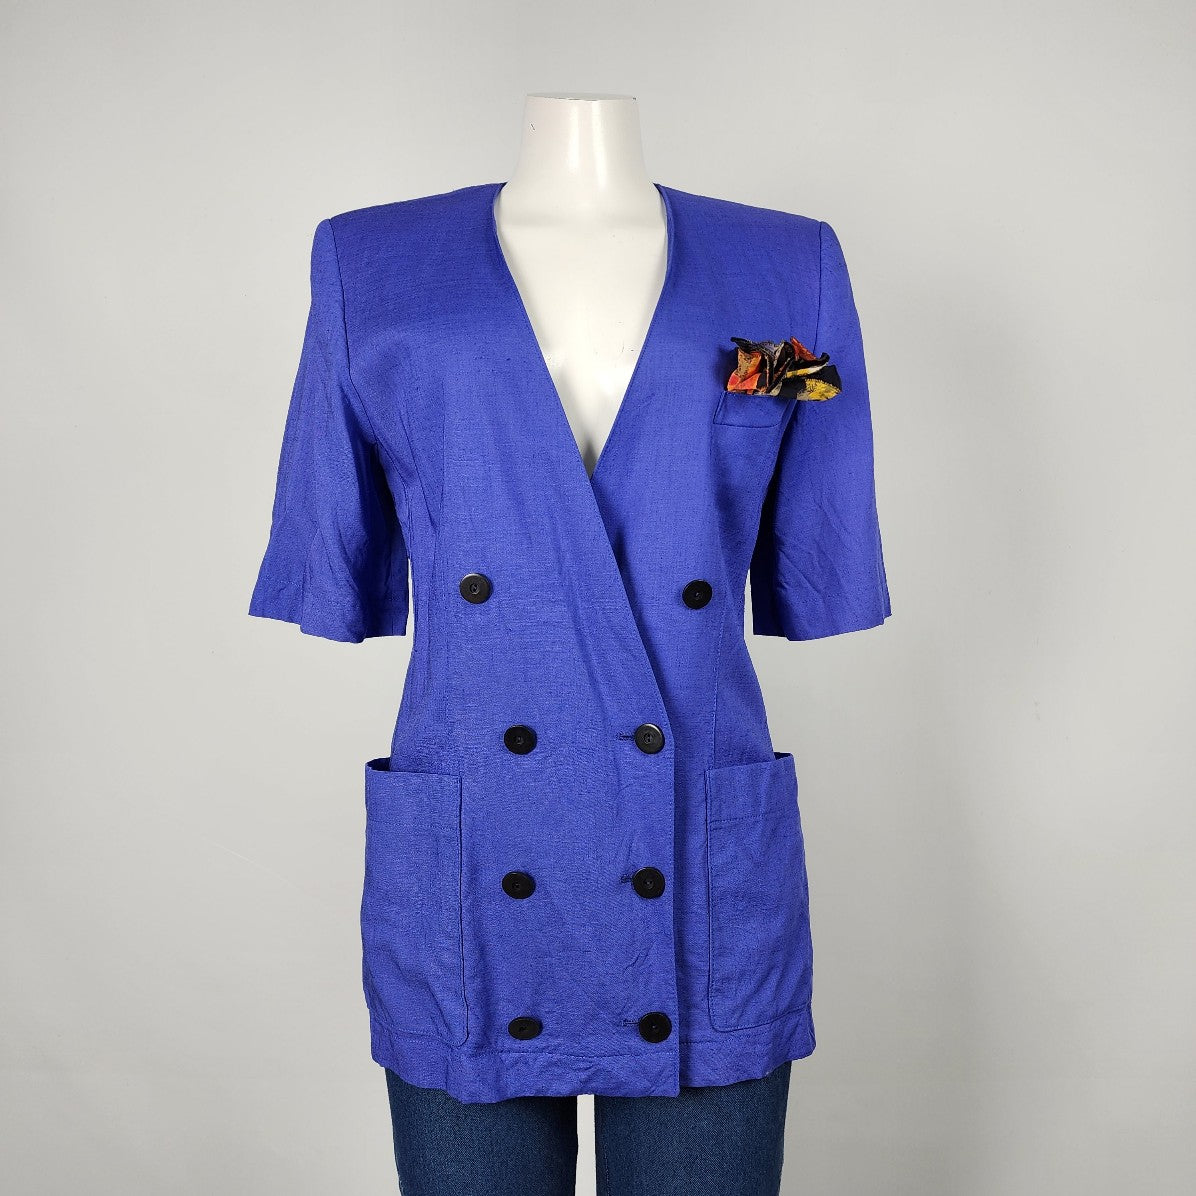 Vintage Niendorf Blue Linen Short Sleeve Blazer Size S/M